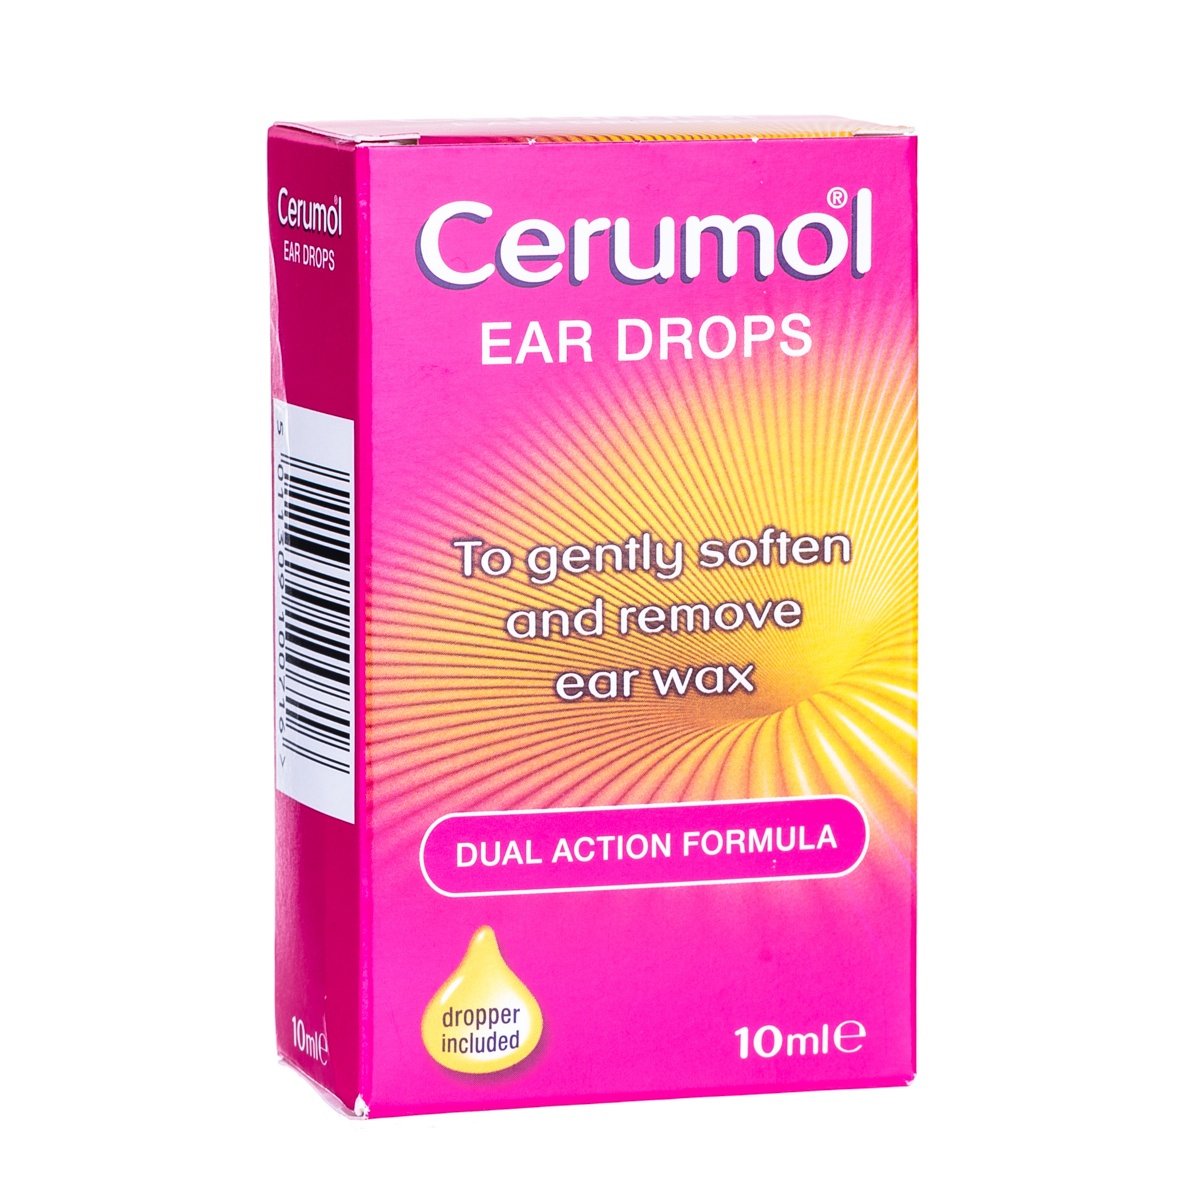 Buy Cerumol Ear Drops UK | Buy Cerumol Ear Drops | Cerumol Ear Drops Online